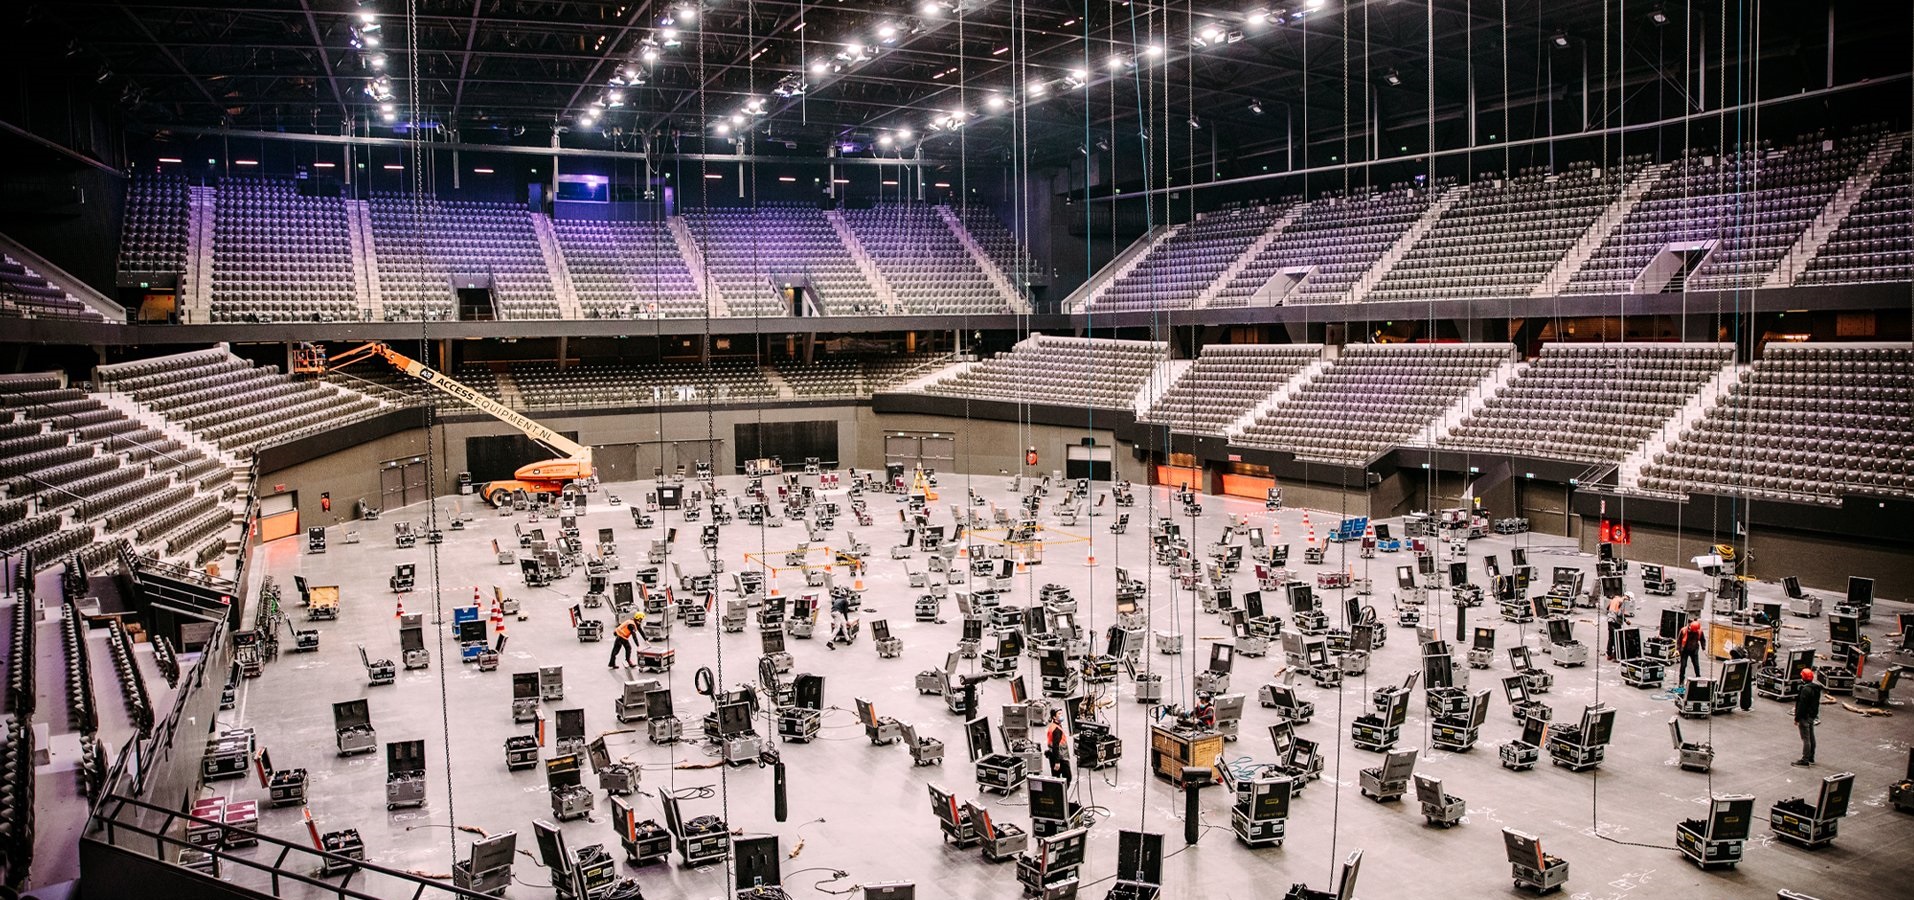 , Palco do Festival da Eurovisão começa a ser montado em Roterdão